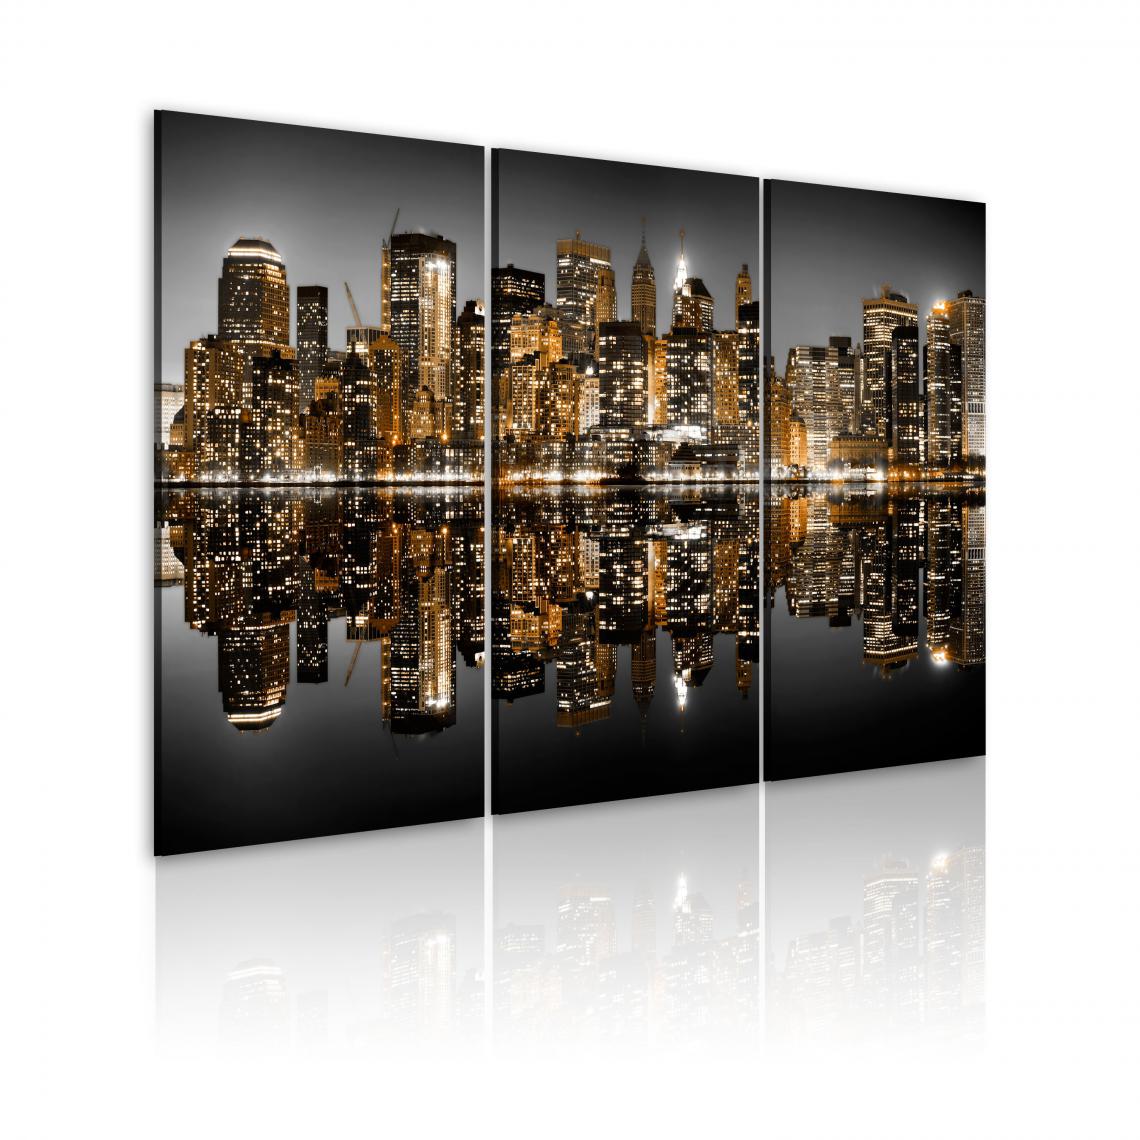 Decoshop26 - Tableau sur toile en 3 panneaux décoration murale image imprimée cadre en bois à suspendre Mer de lumières - New York 120x80 cm 11_0007910 - Tableaux, peintures